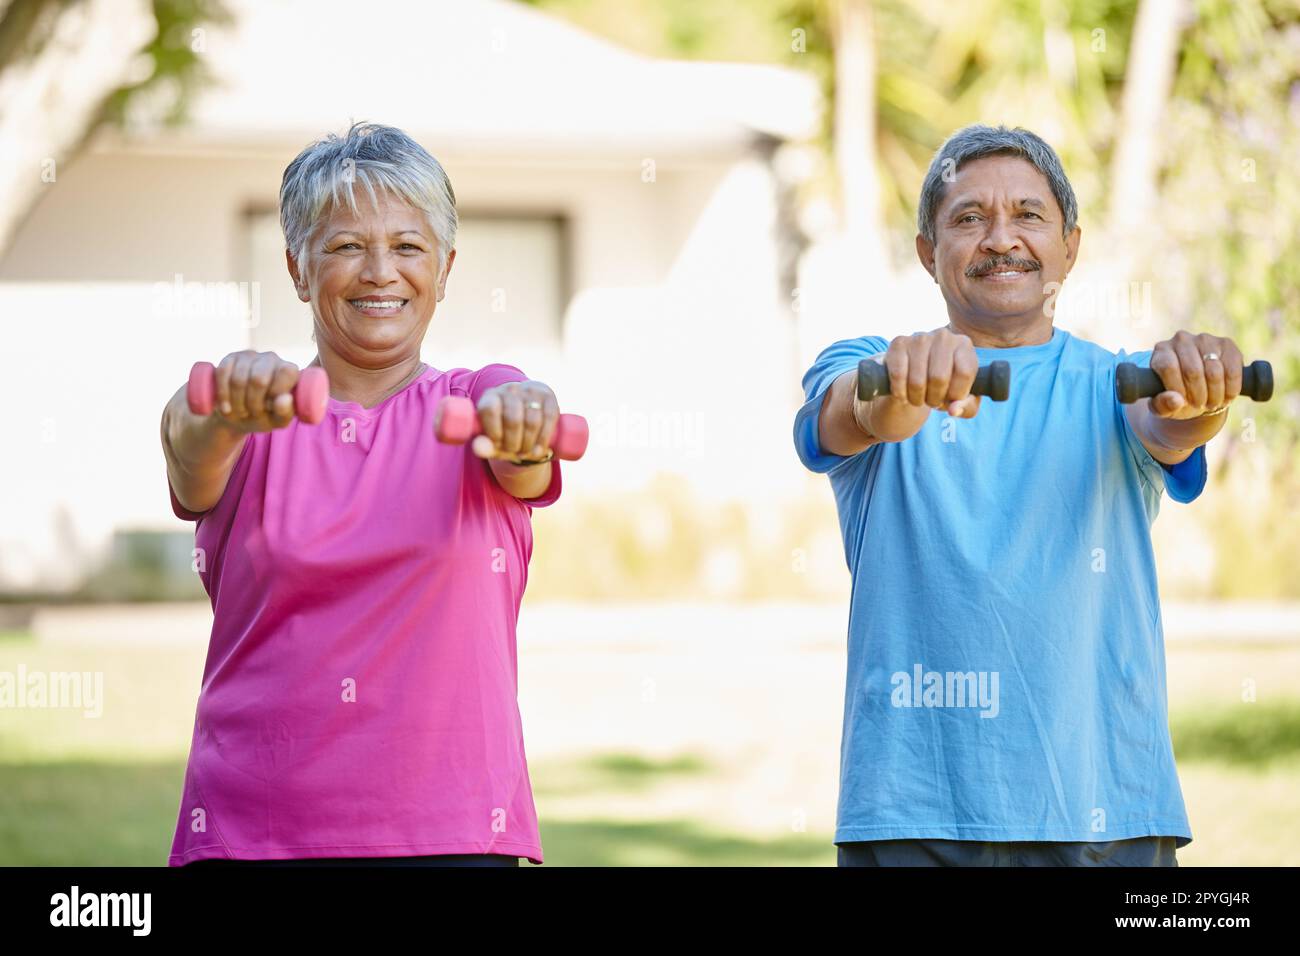 Garder la forme et la santé ensemble. Portrait d'un couple mature s'exerçant ensemble dans leur arrière-cour. Banque D'Images